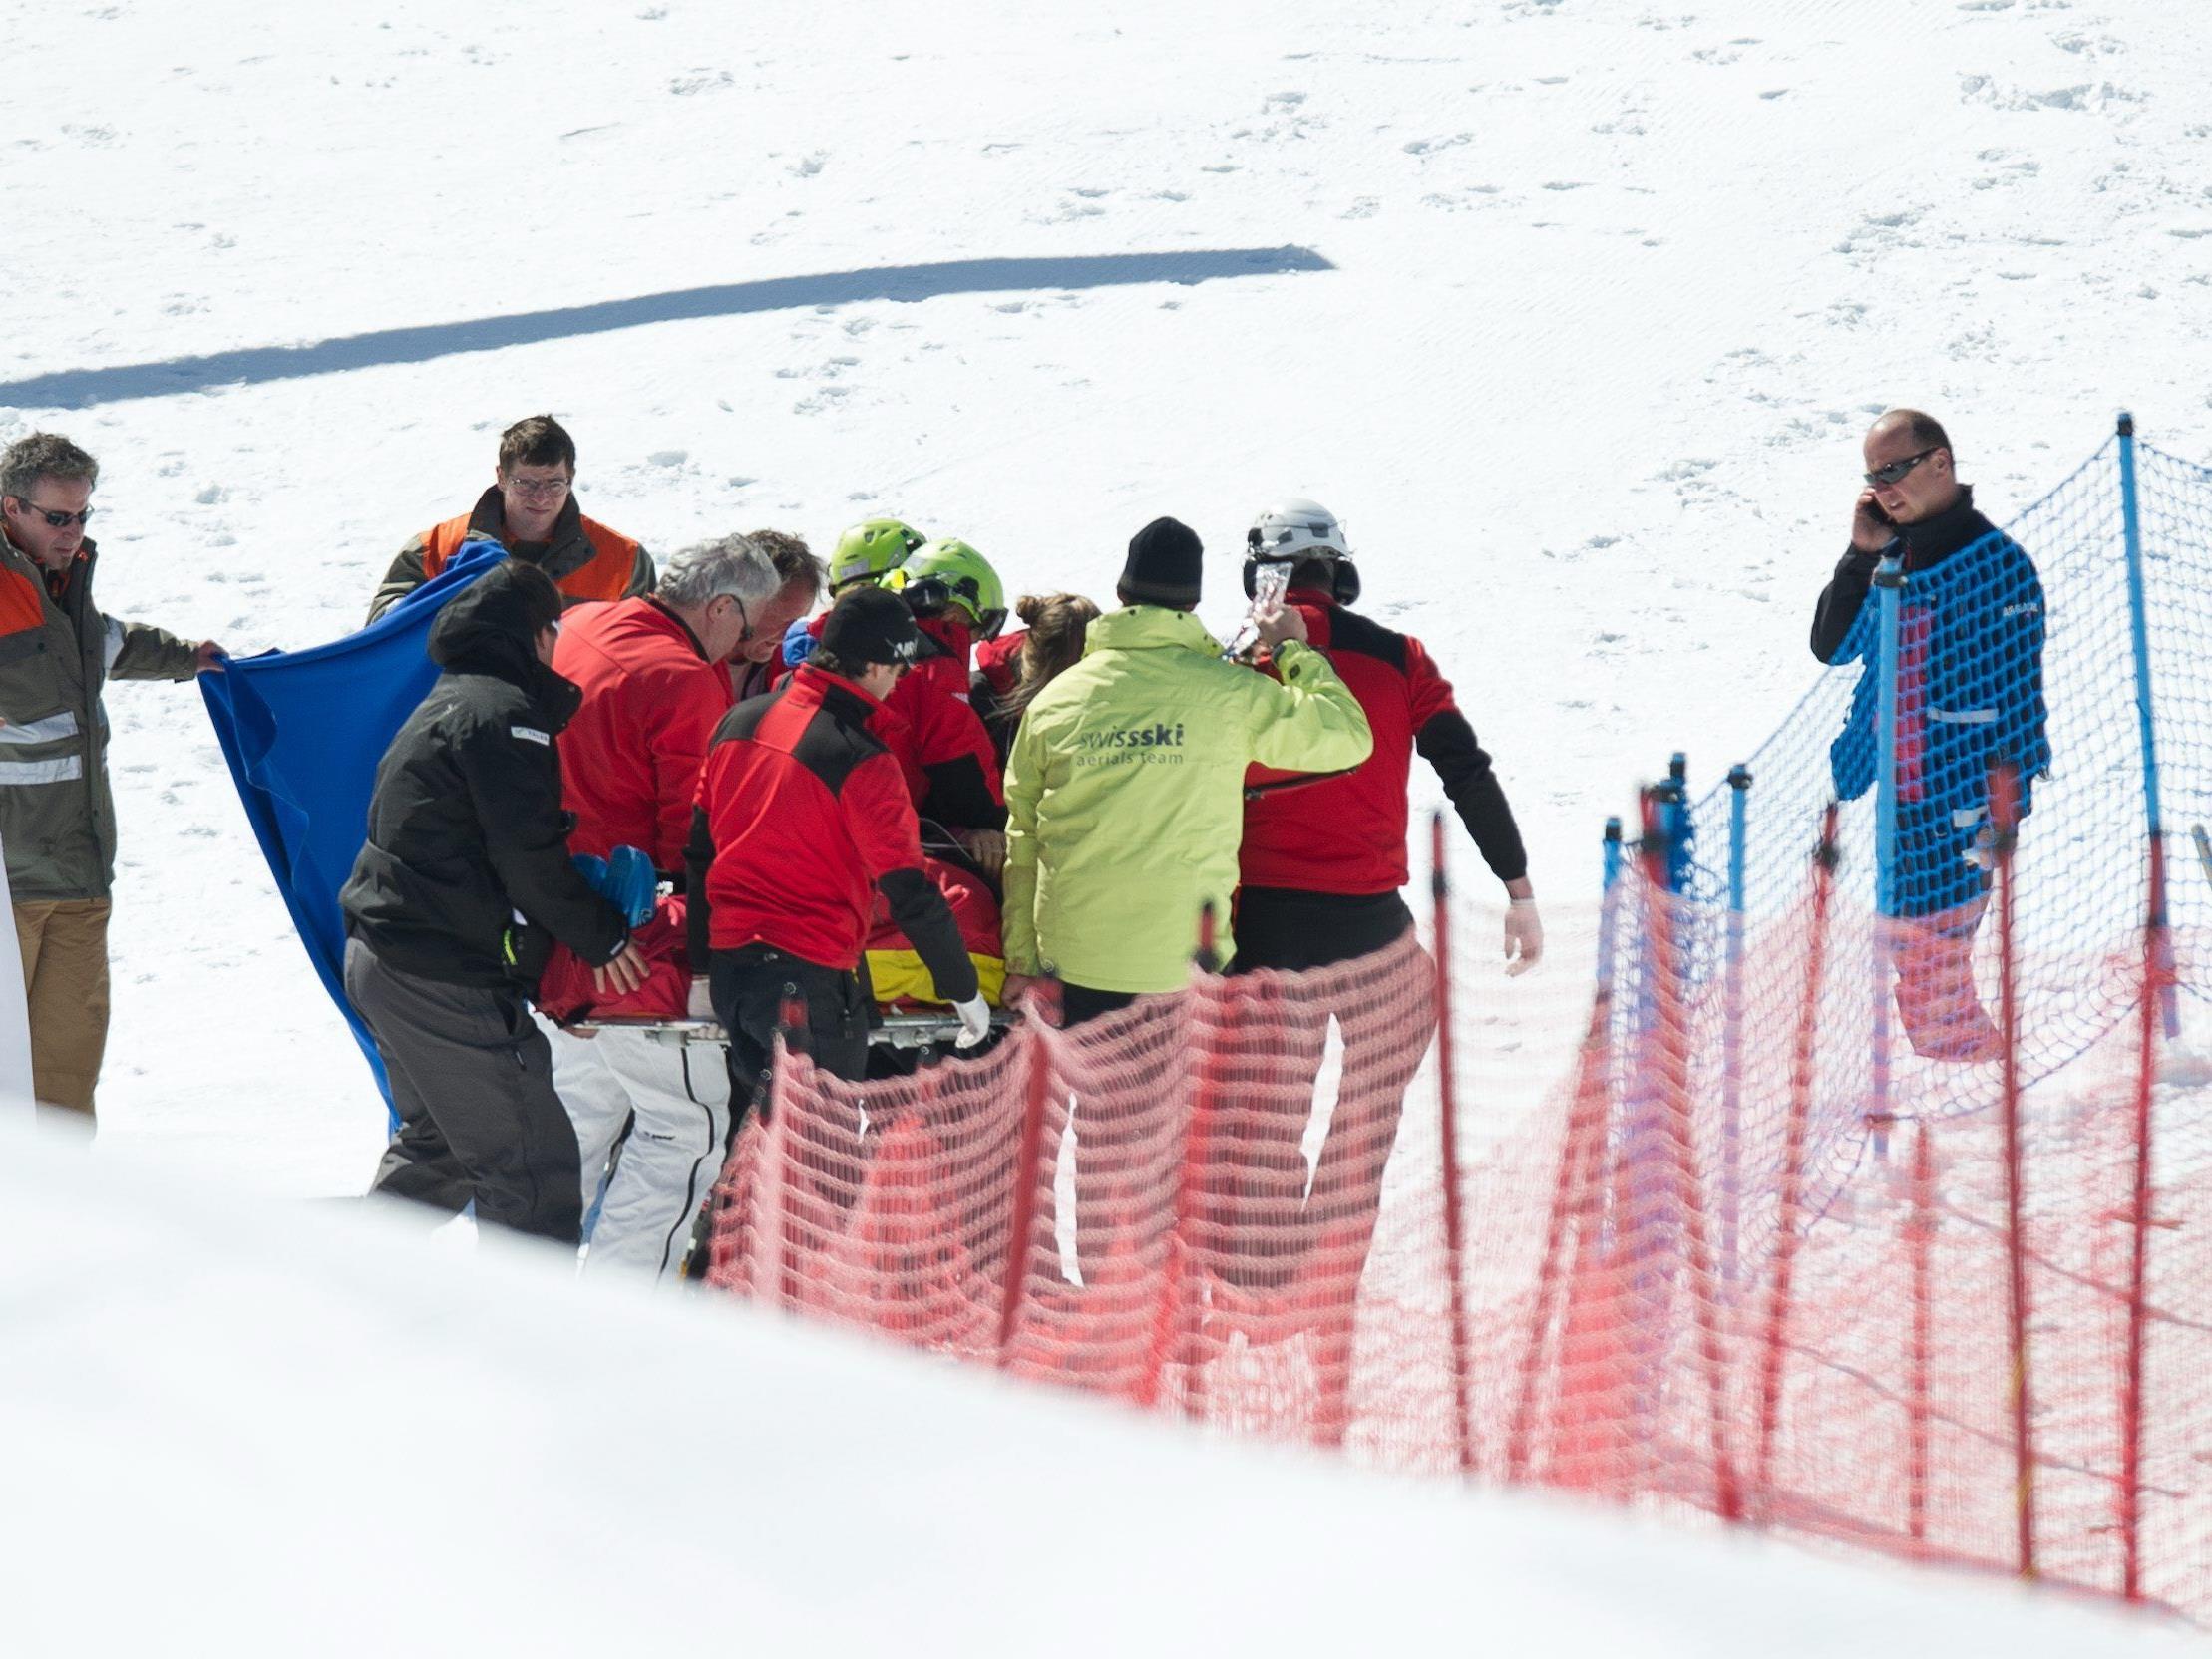 Skicrosser Zoricic wird nach dem Skicross-Rennen in Grindelwald schwer verletzt abtransportiert.